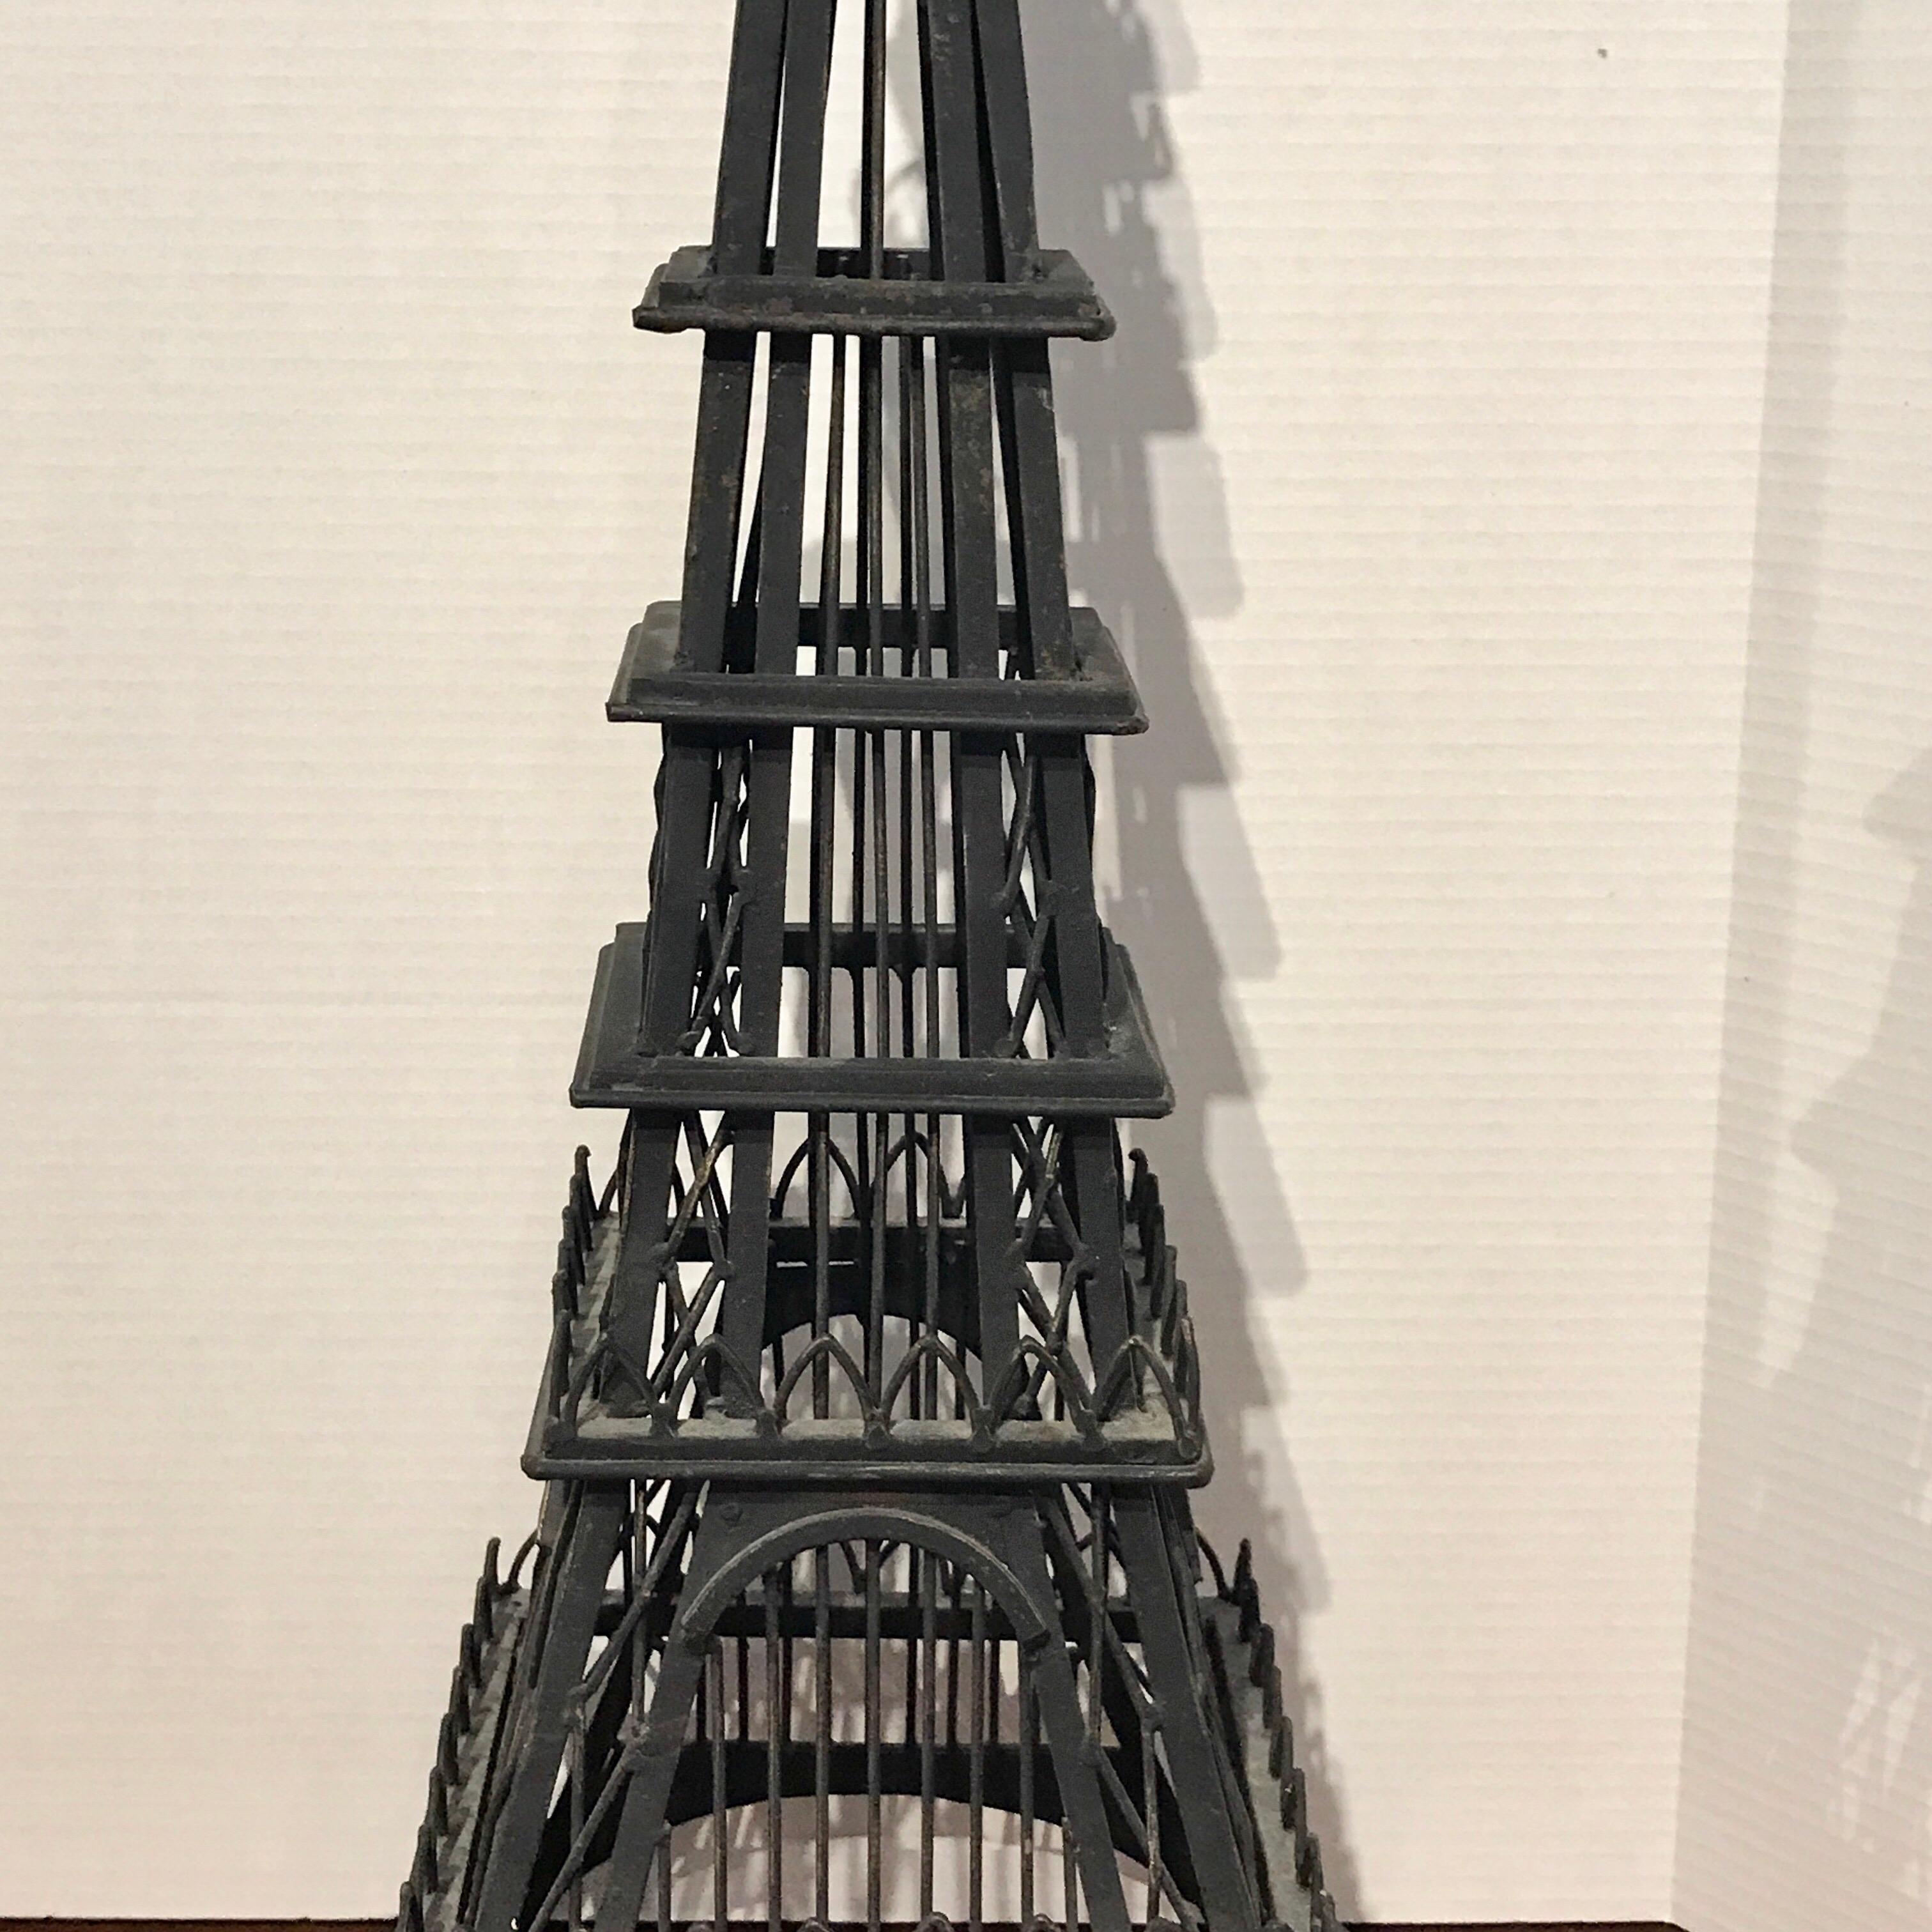 Modèle Grand Tour de la Tour Eiffel, maintenant comme lampe, nouvellement câblé. Le modèle architectural mesure 30